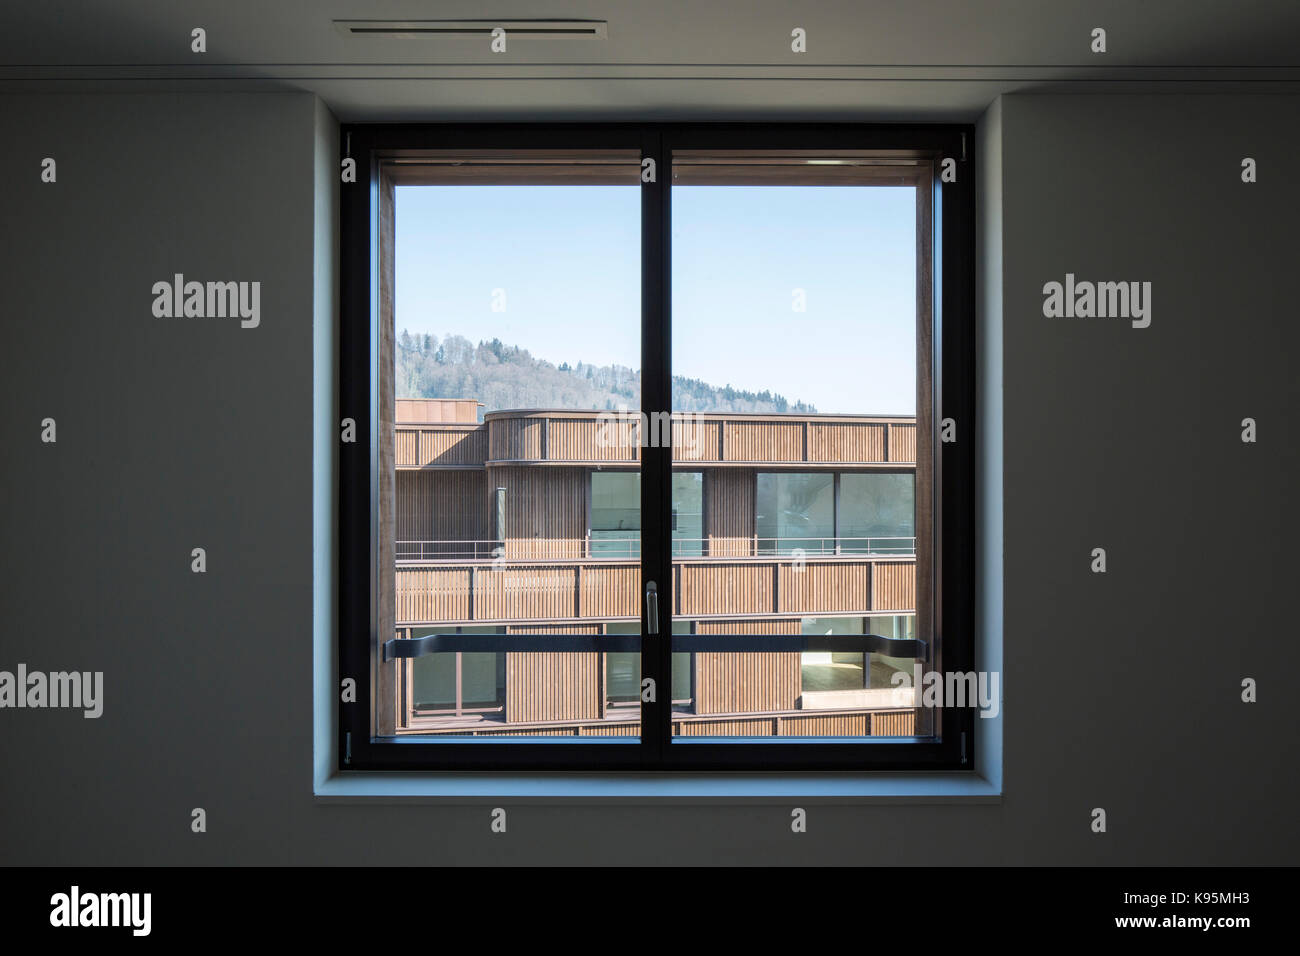 View through. Housing estate Malters, Malters, Switzerland. Architect: Diener & Diener, 2016. Stock Photo